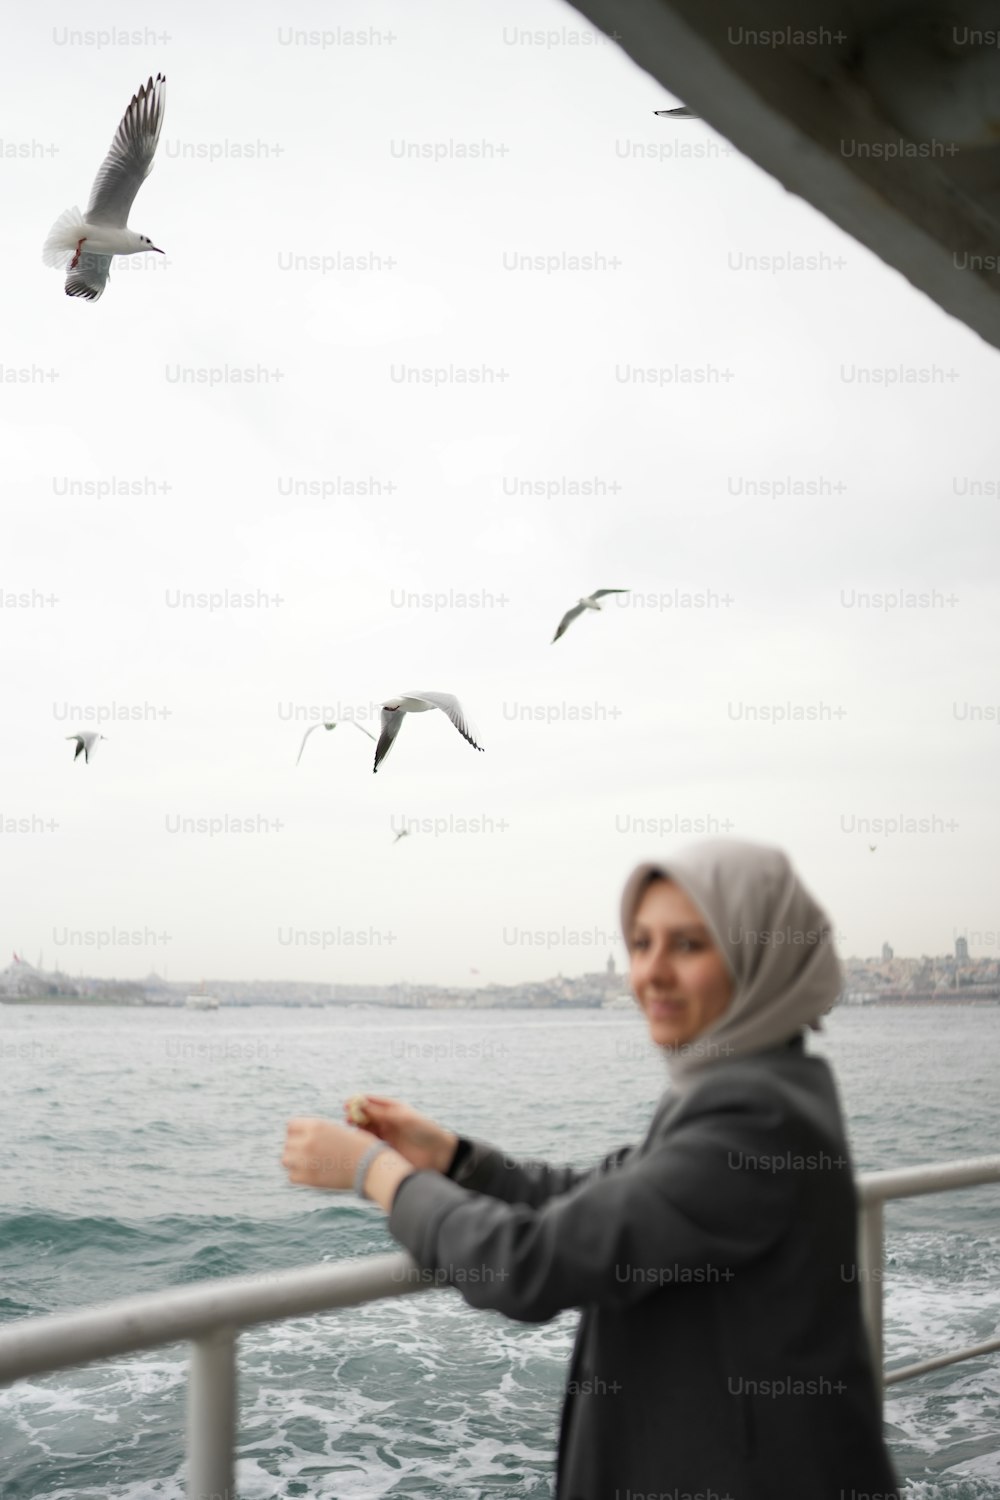 Una mujer parada en un bote mirando gaviotas